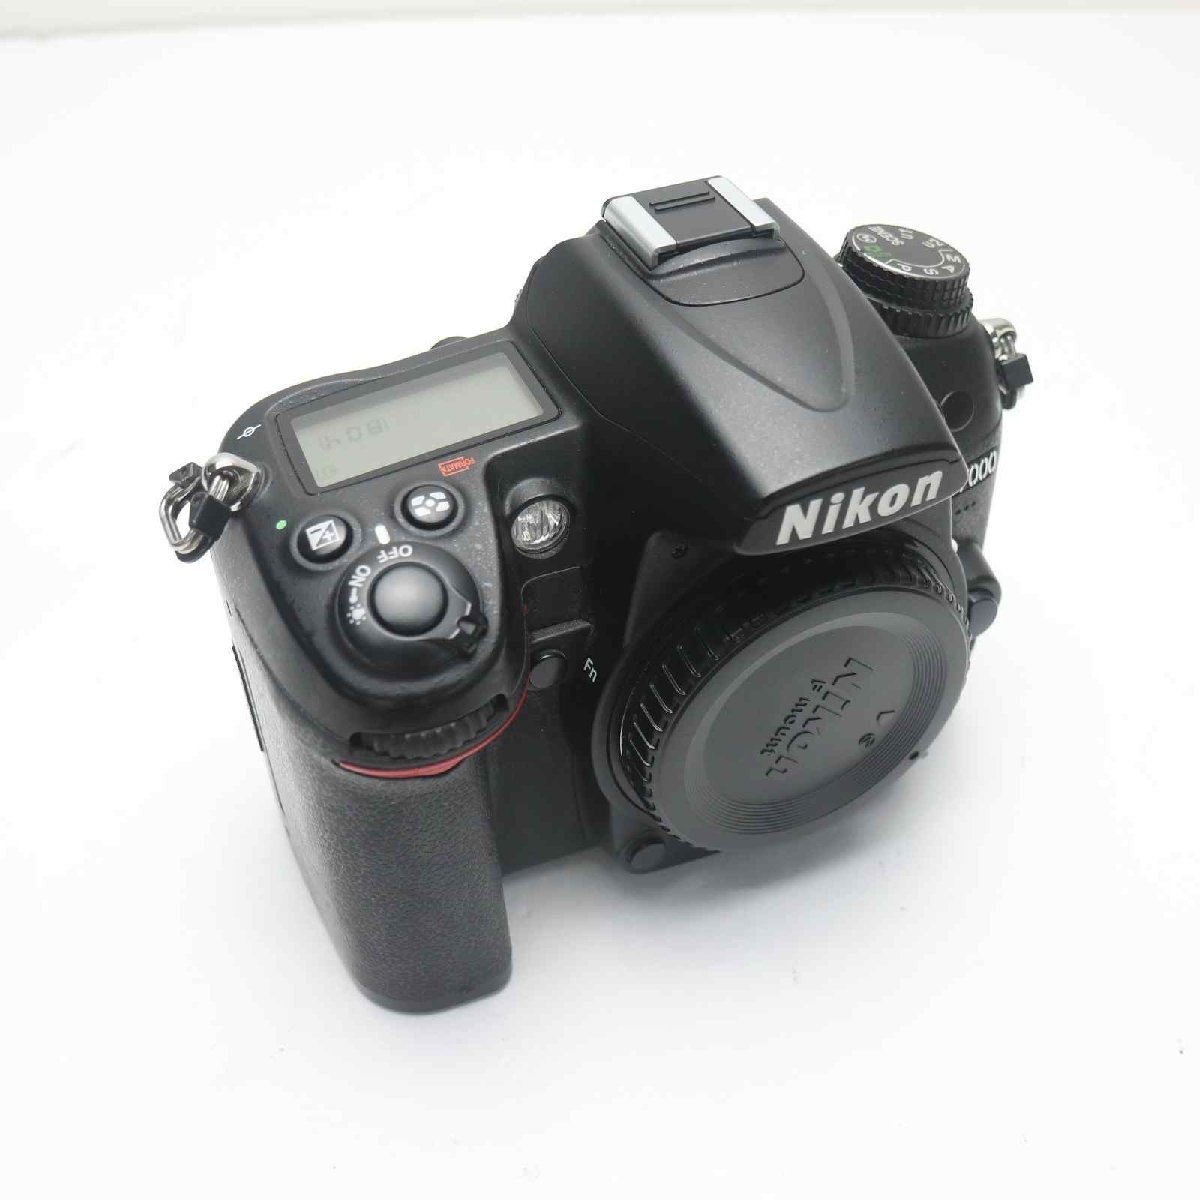 超美品 Nikon D7000 ブラック ボディ 即日発送 Nikon デジタル一眼 本体 あすつく 土日祝発送OK